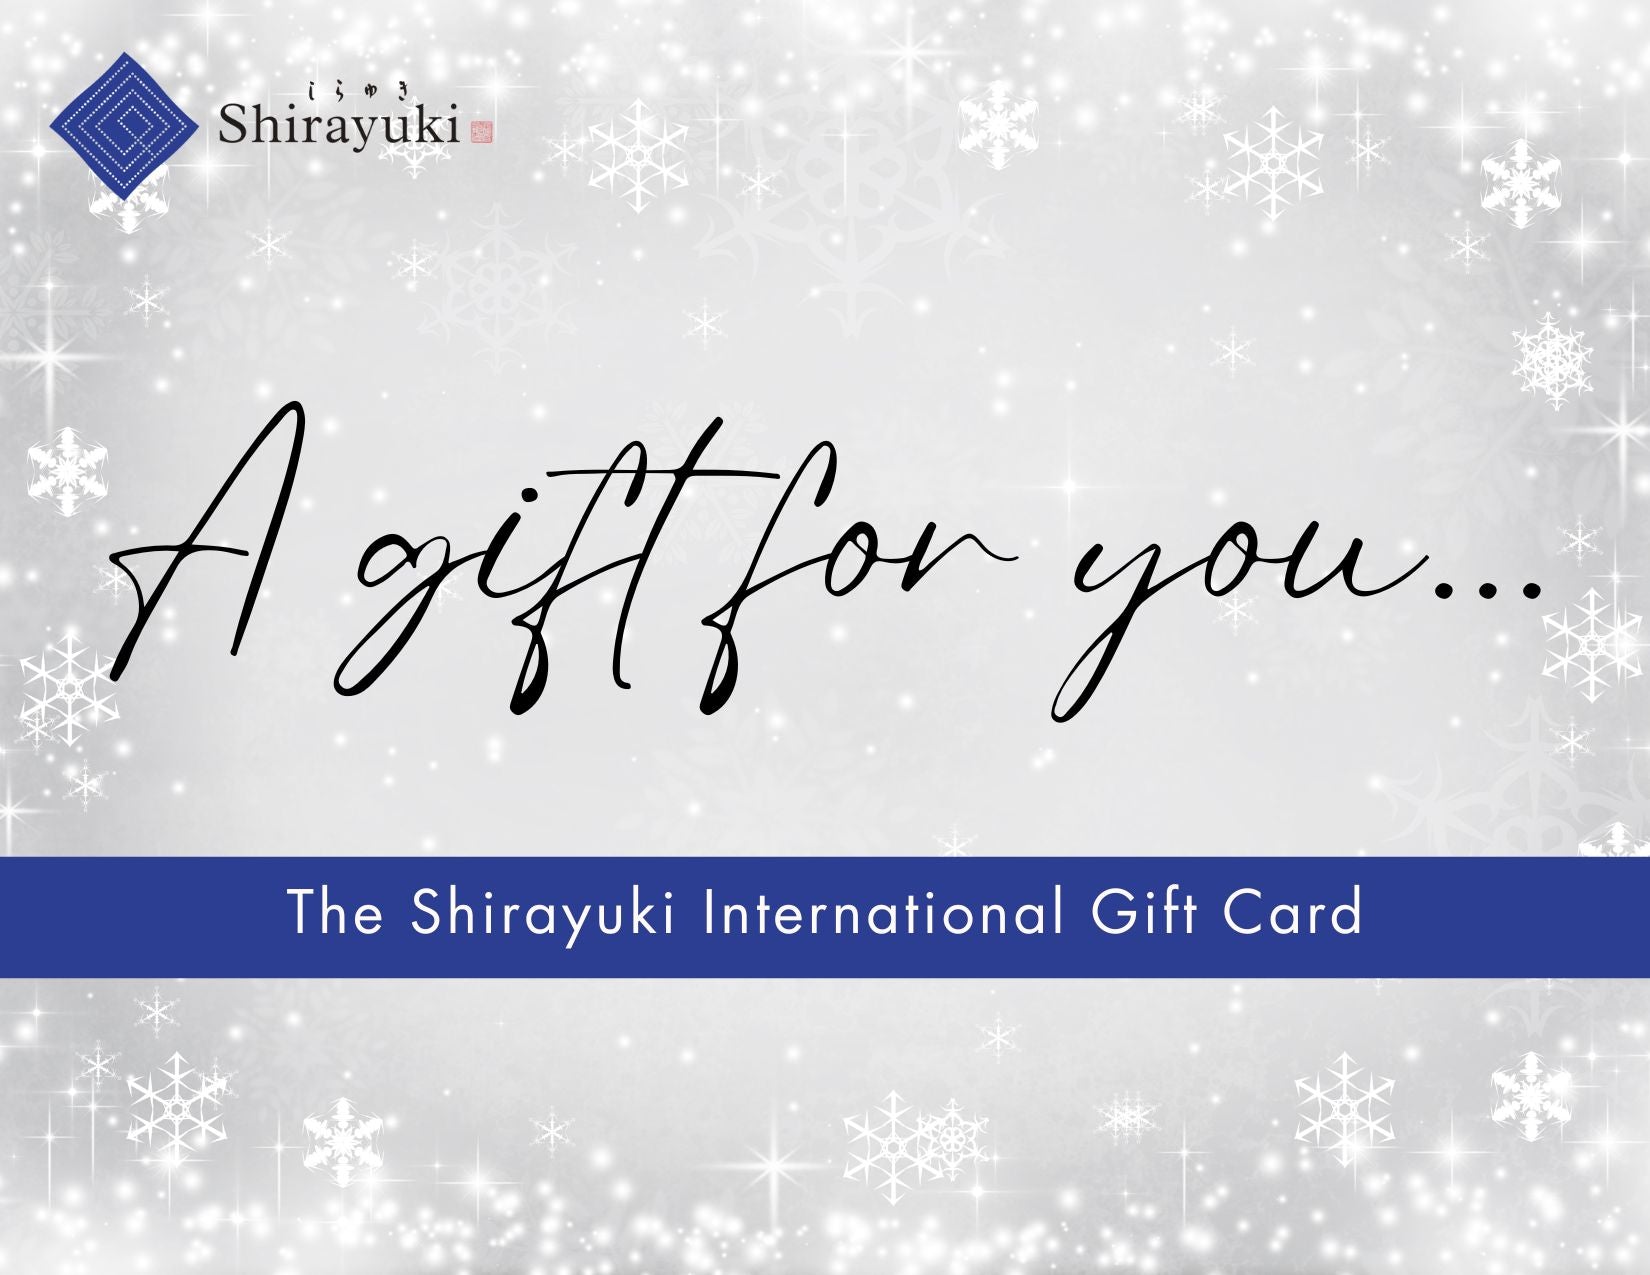 The Shirayuki International Gift Card